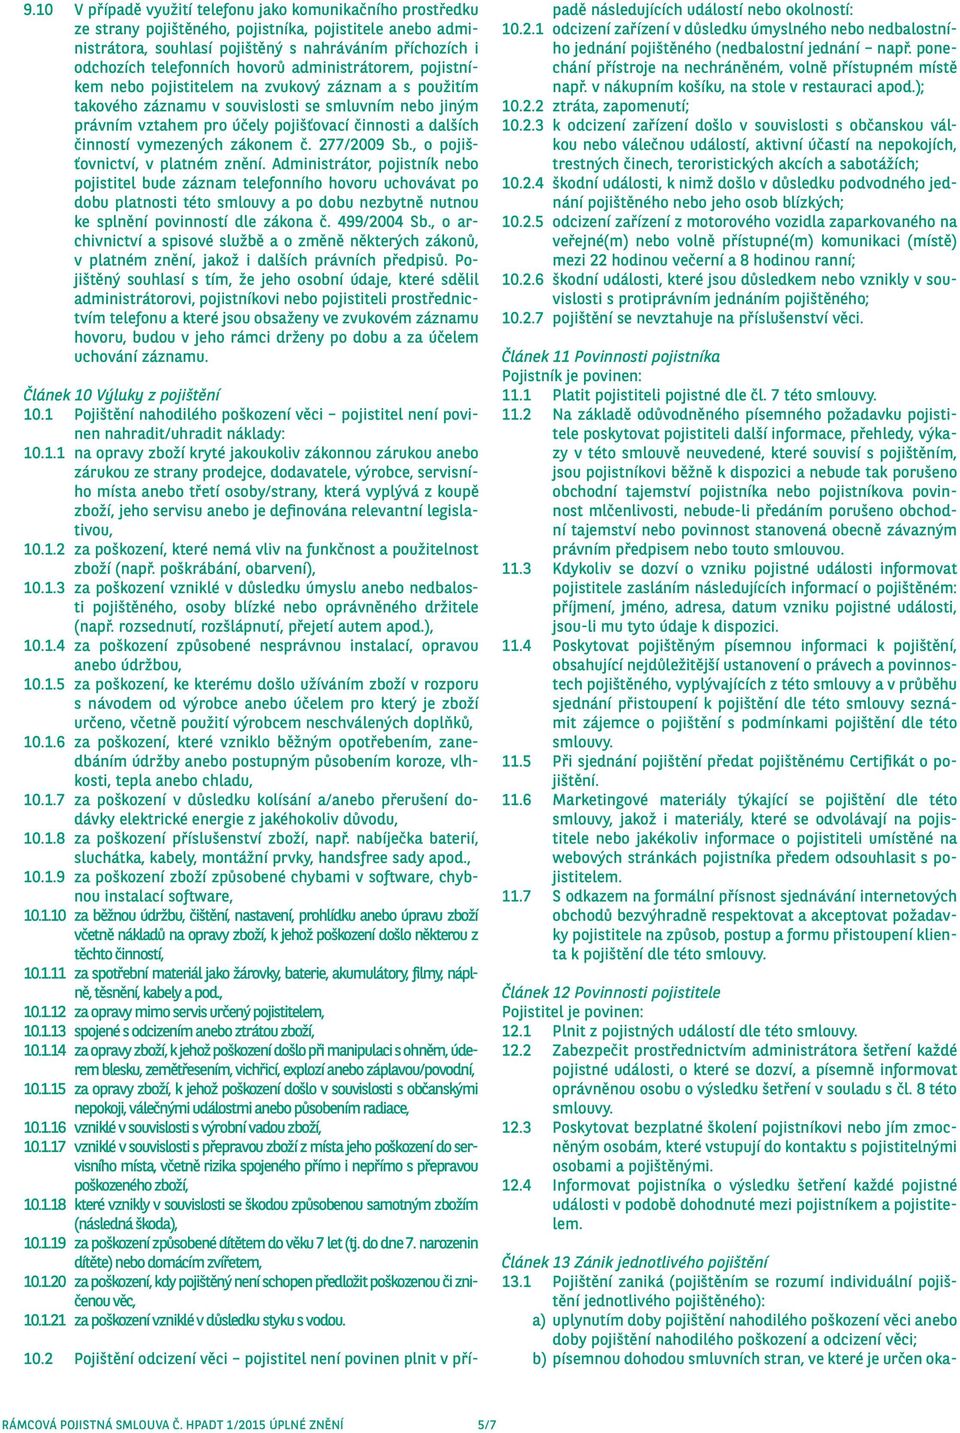 činností vymezených zákonem č. 277/2009 Sb., o pojišťovnictví, v platném znění.